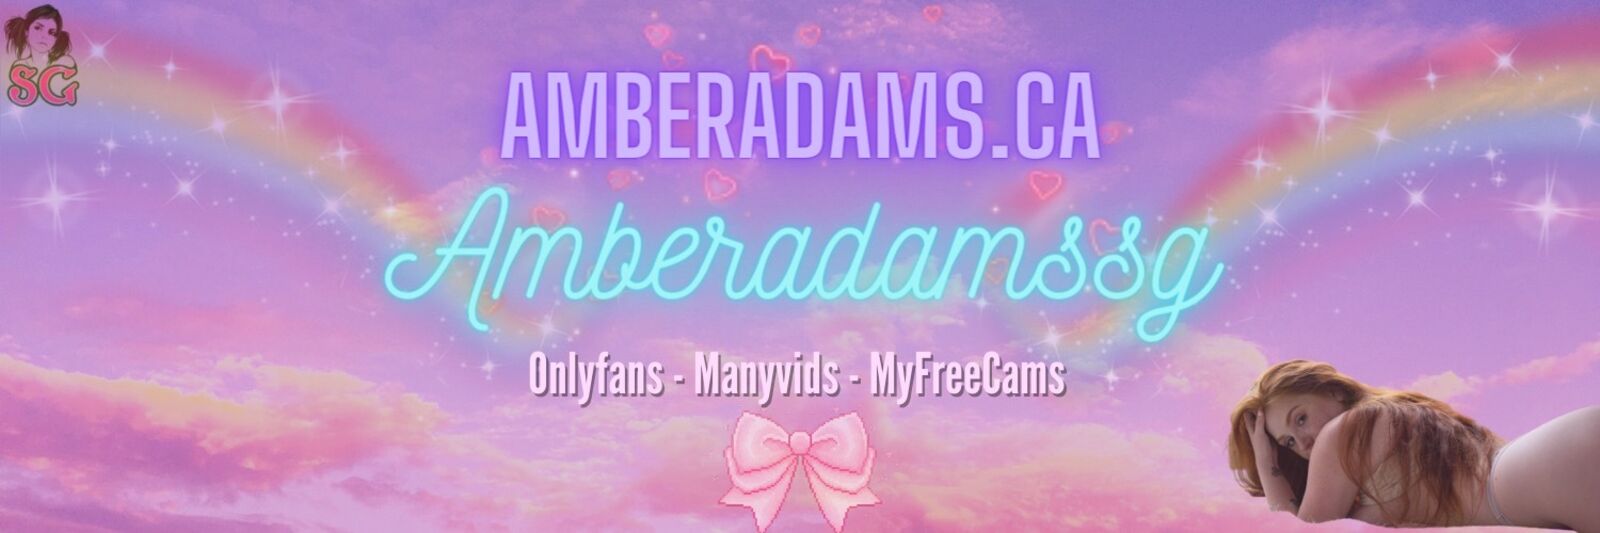 See Amber Adams profile